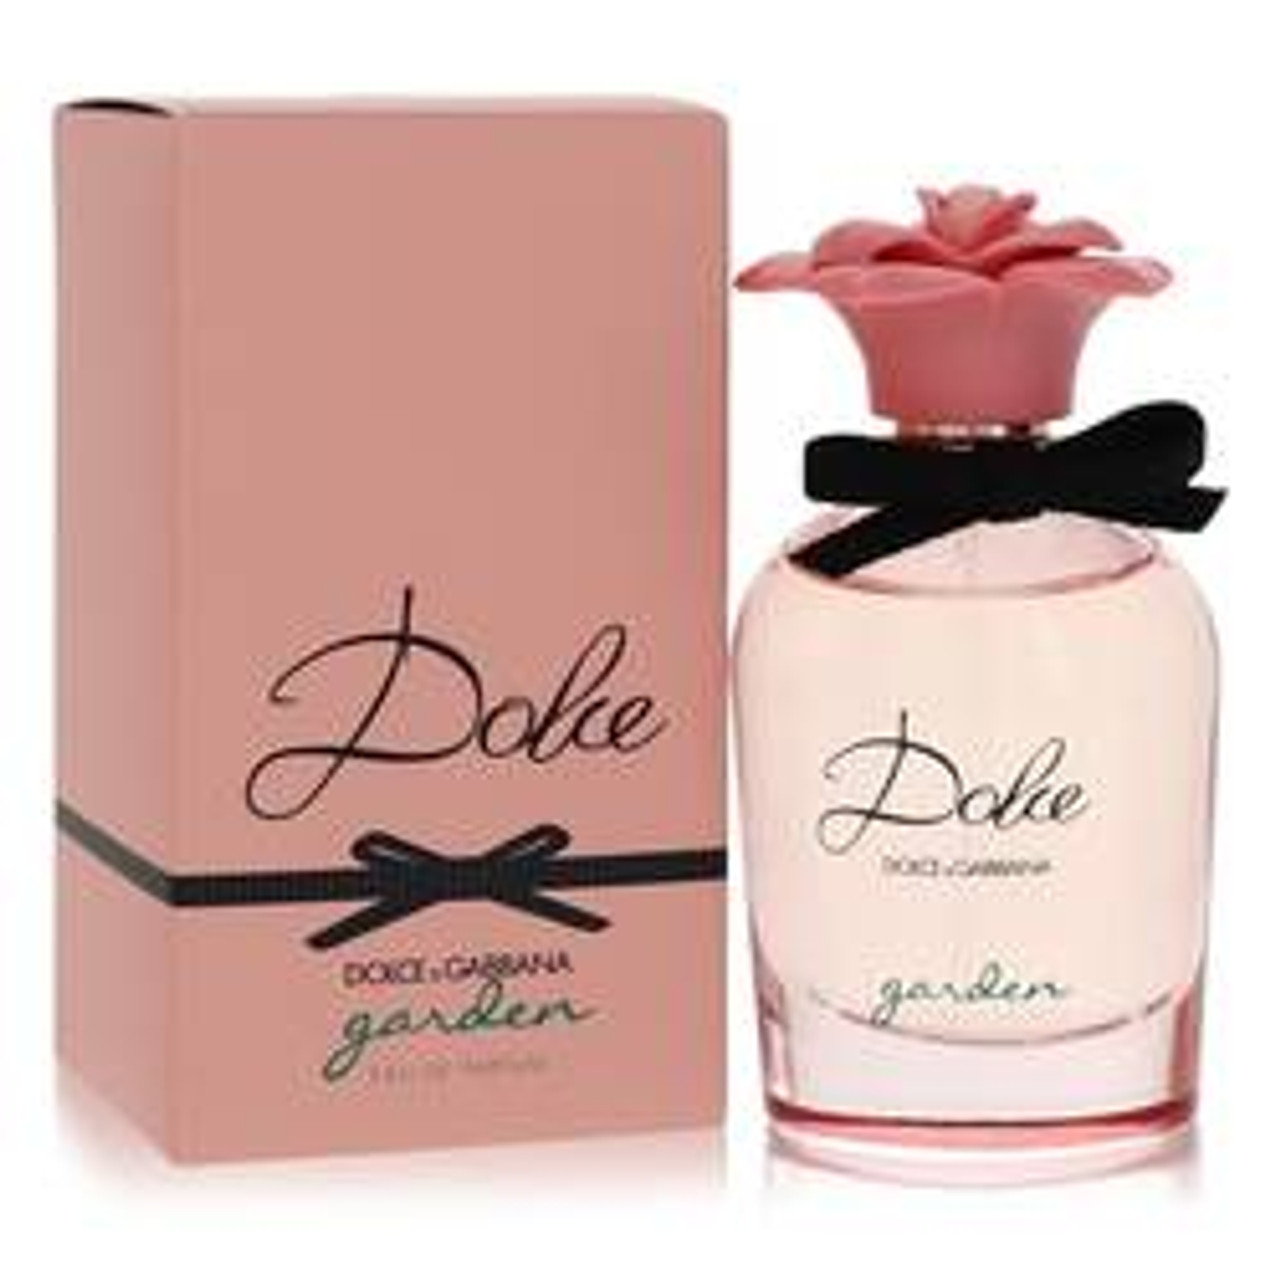 Dolce Garden Perfume By Dolce & Gabbana Eau De Parfum Spray 1.6 oz for Women - *Pre-Order